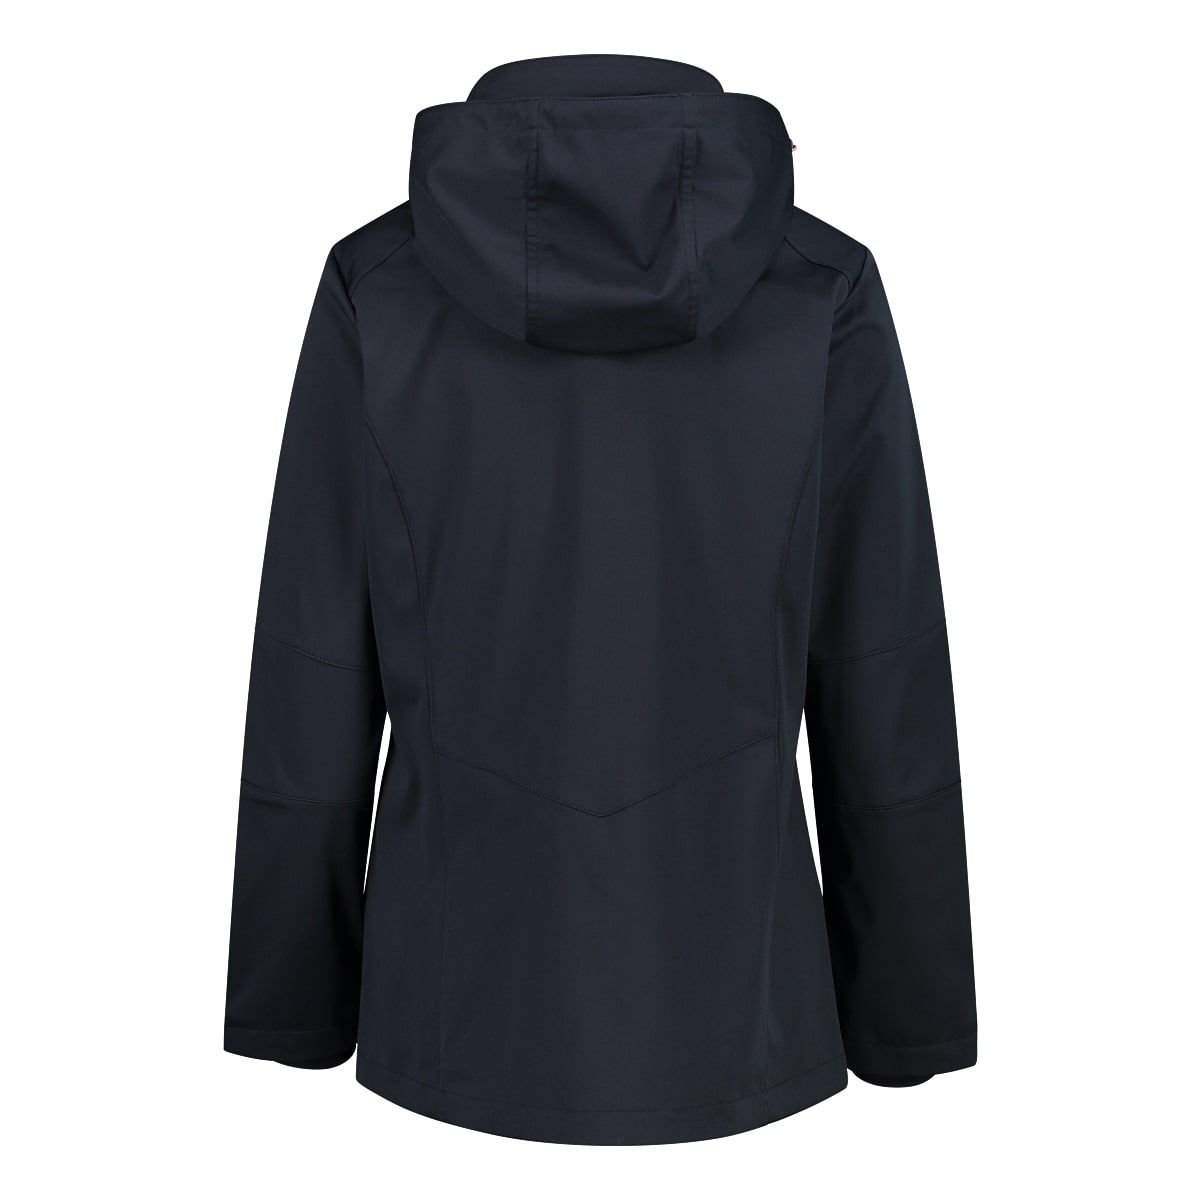 CMP Damen Softshelljacke Women Jacket Zip Hood 39A5096 antracite-fard